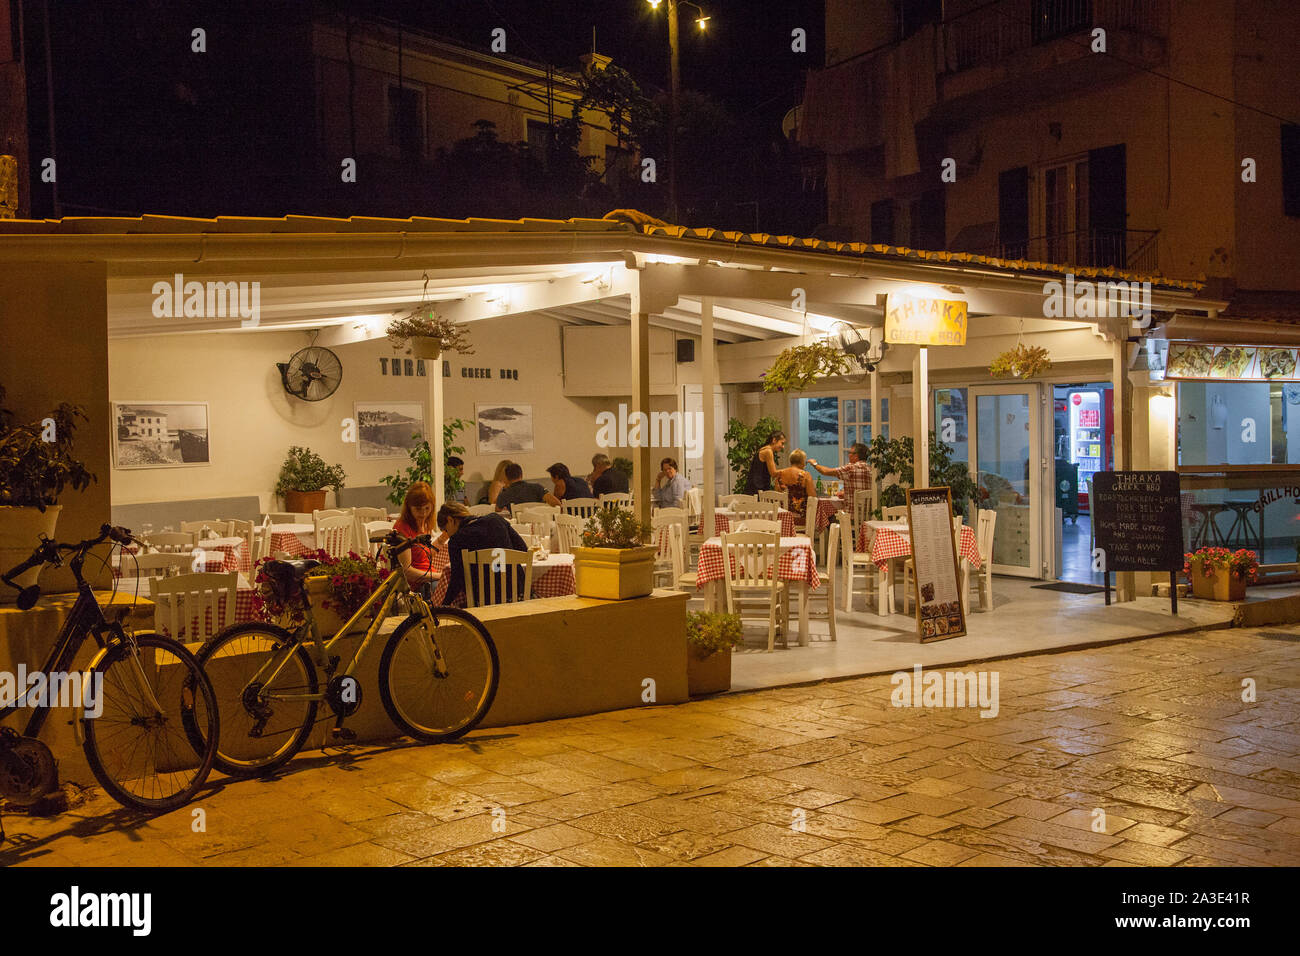 Nächtliche Aussicht auf ein griechisches Restaurant Taverna mit Menschen in Essen an der griechischen Resort von Kassiopi Korfu Griechenland Stockfoto